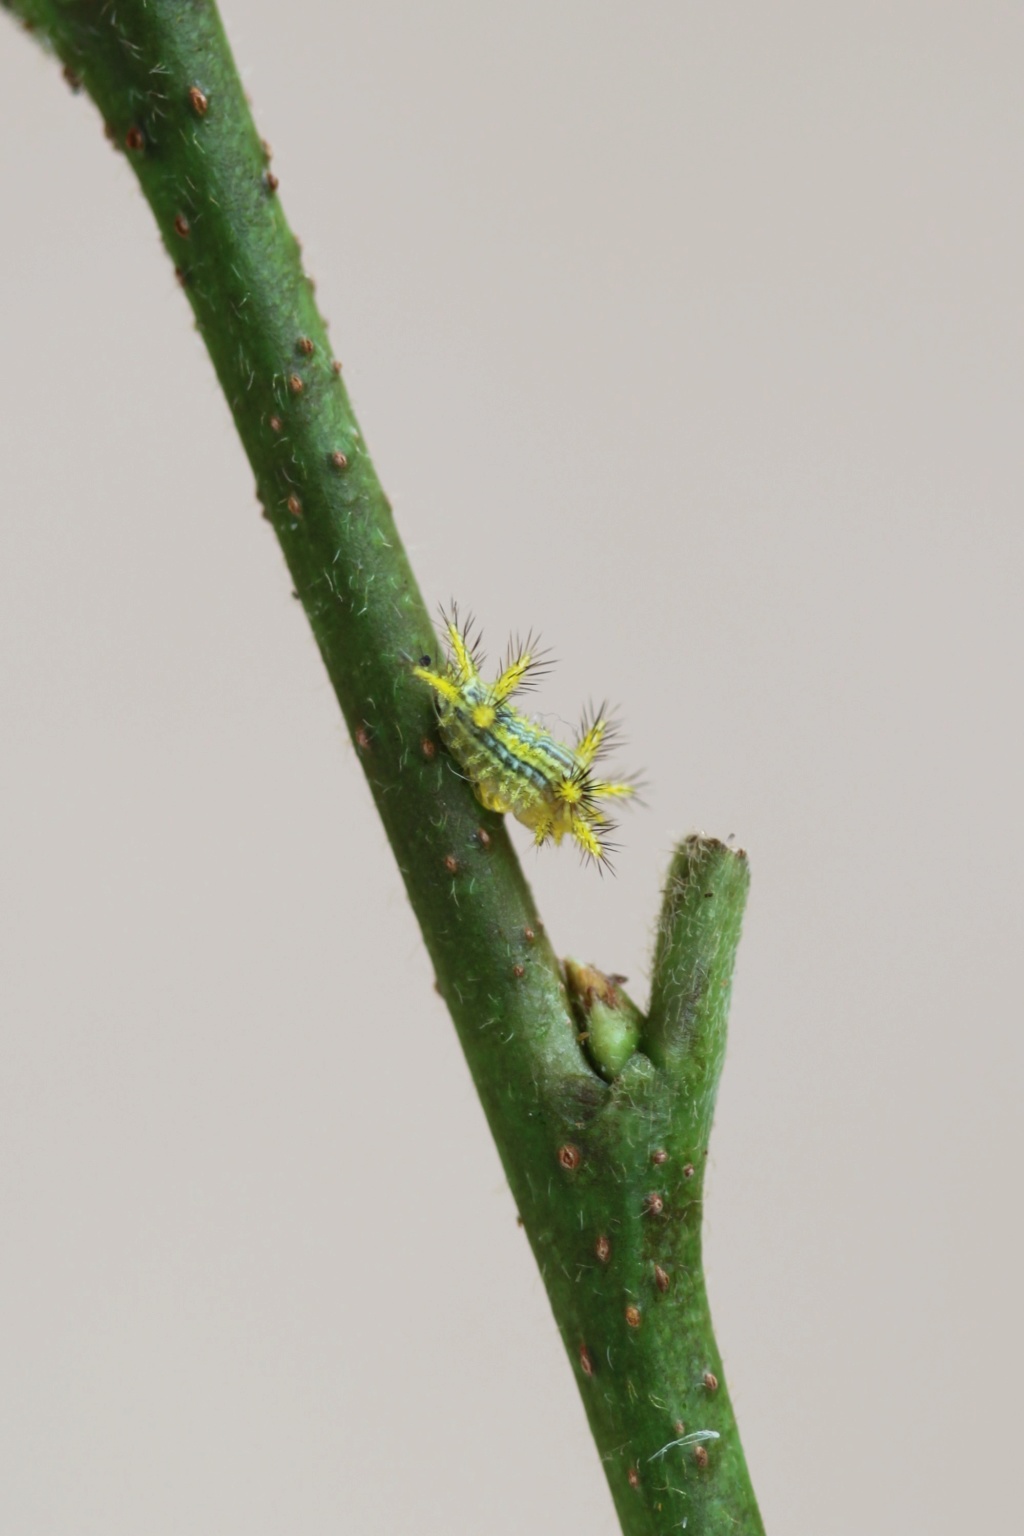 Parasa lepida (Limacodidae) - Notes d'elevage Img_2611